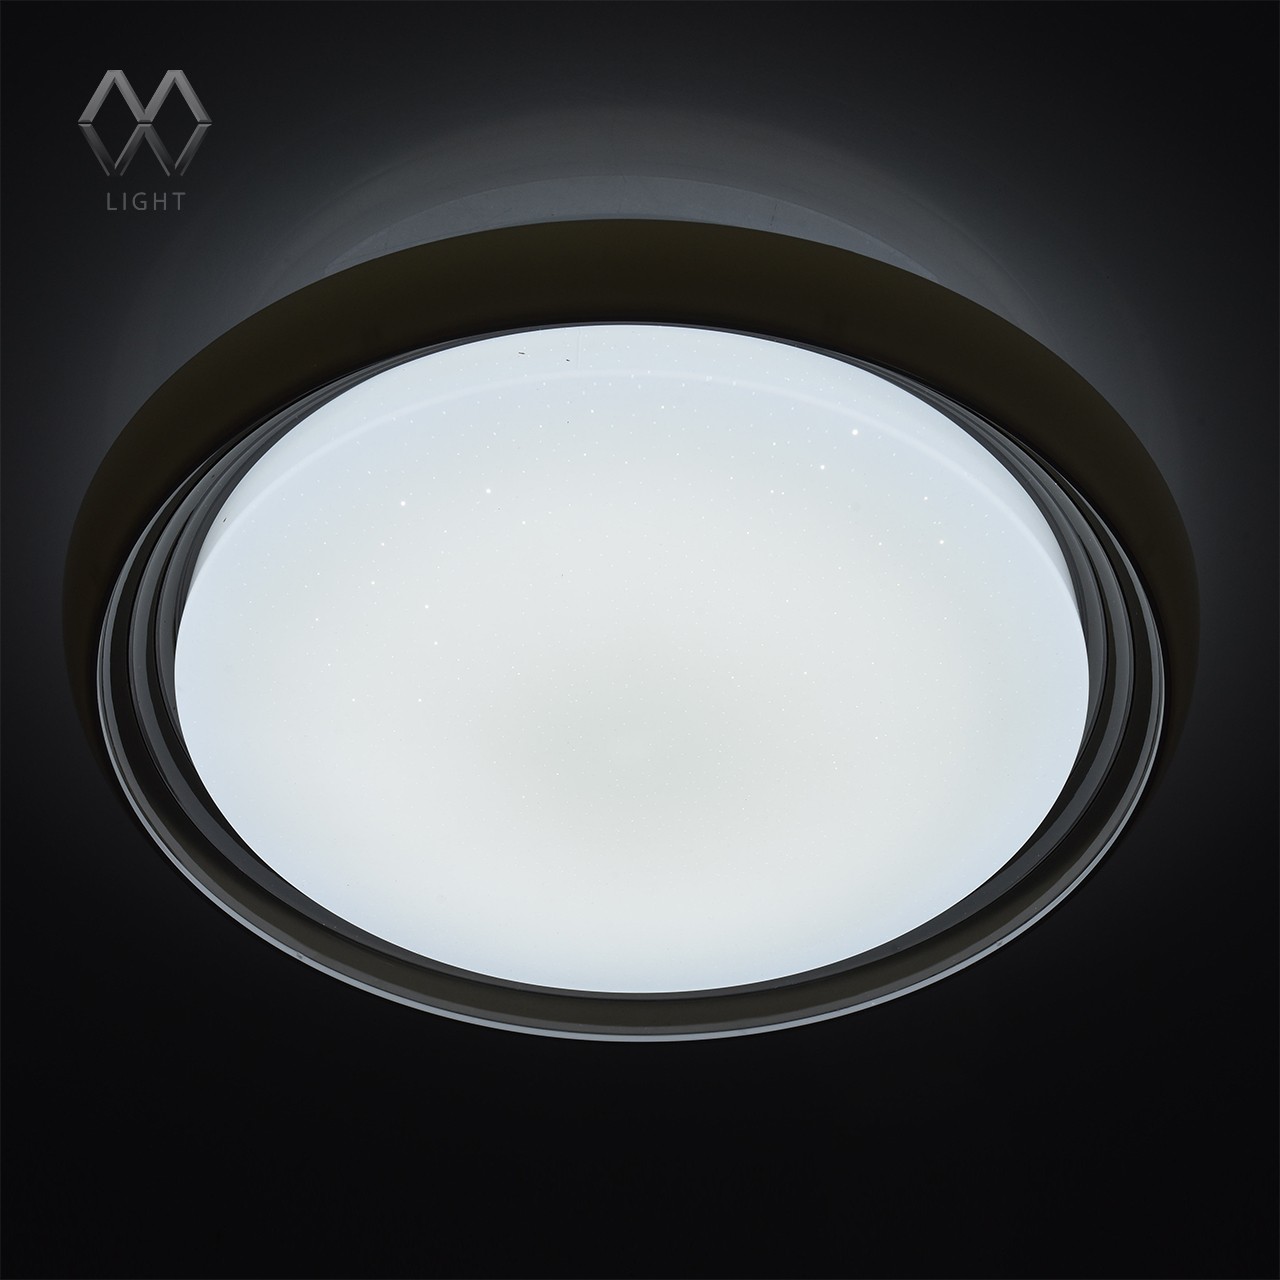 Ривз (пульт) 50W LED MW-Light, арт: 674011901